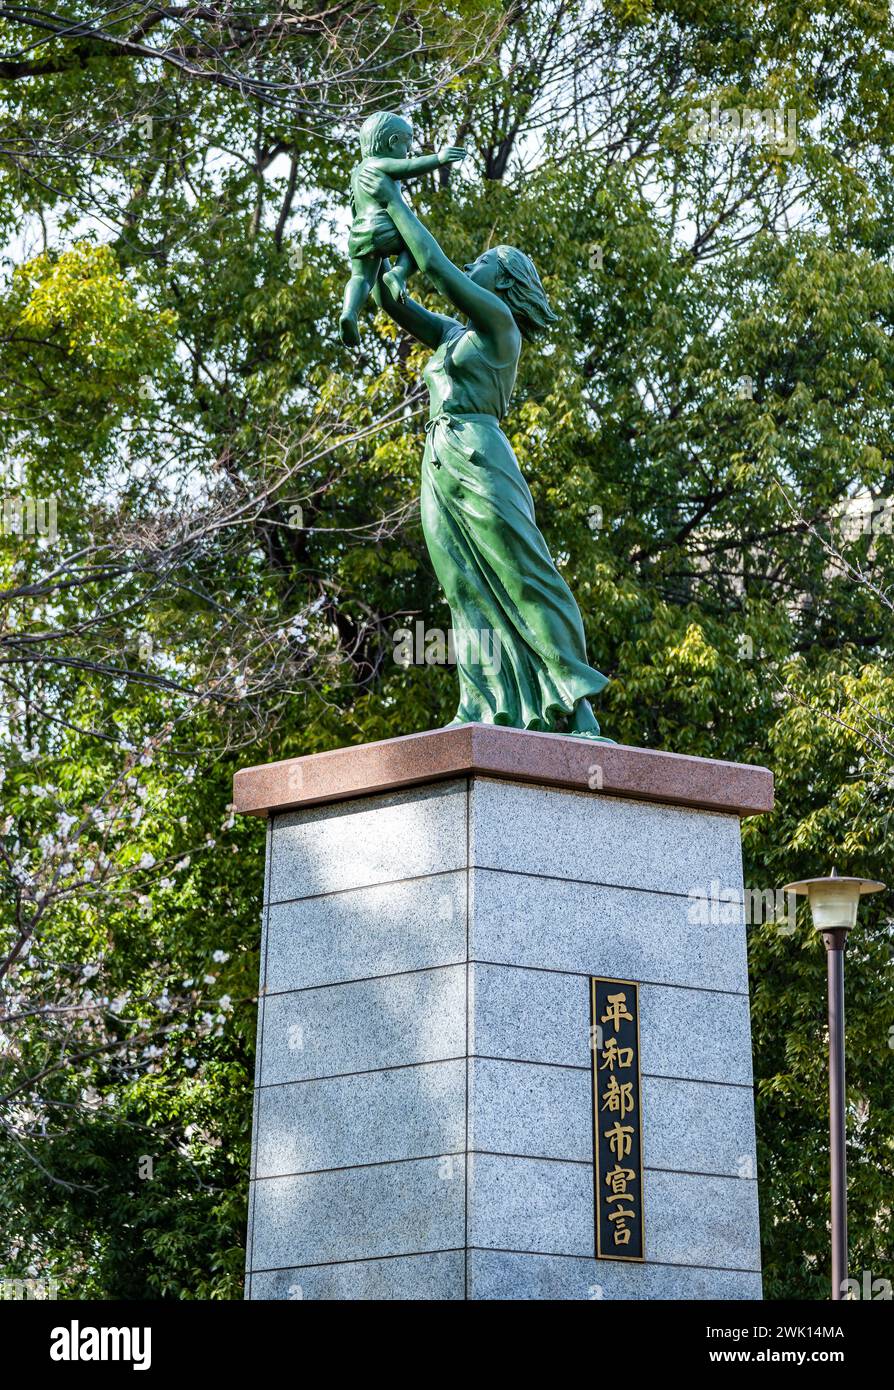 Statua di una madre che tiene in braccio un bambino in un parco locale, simbolo del desiderio di pace. Tokyo, Giappone. Foto Stock